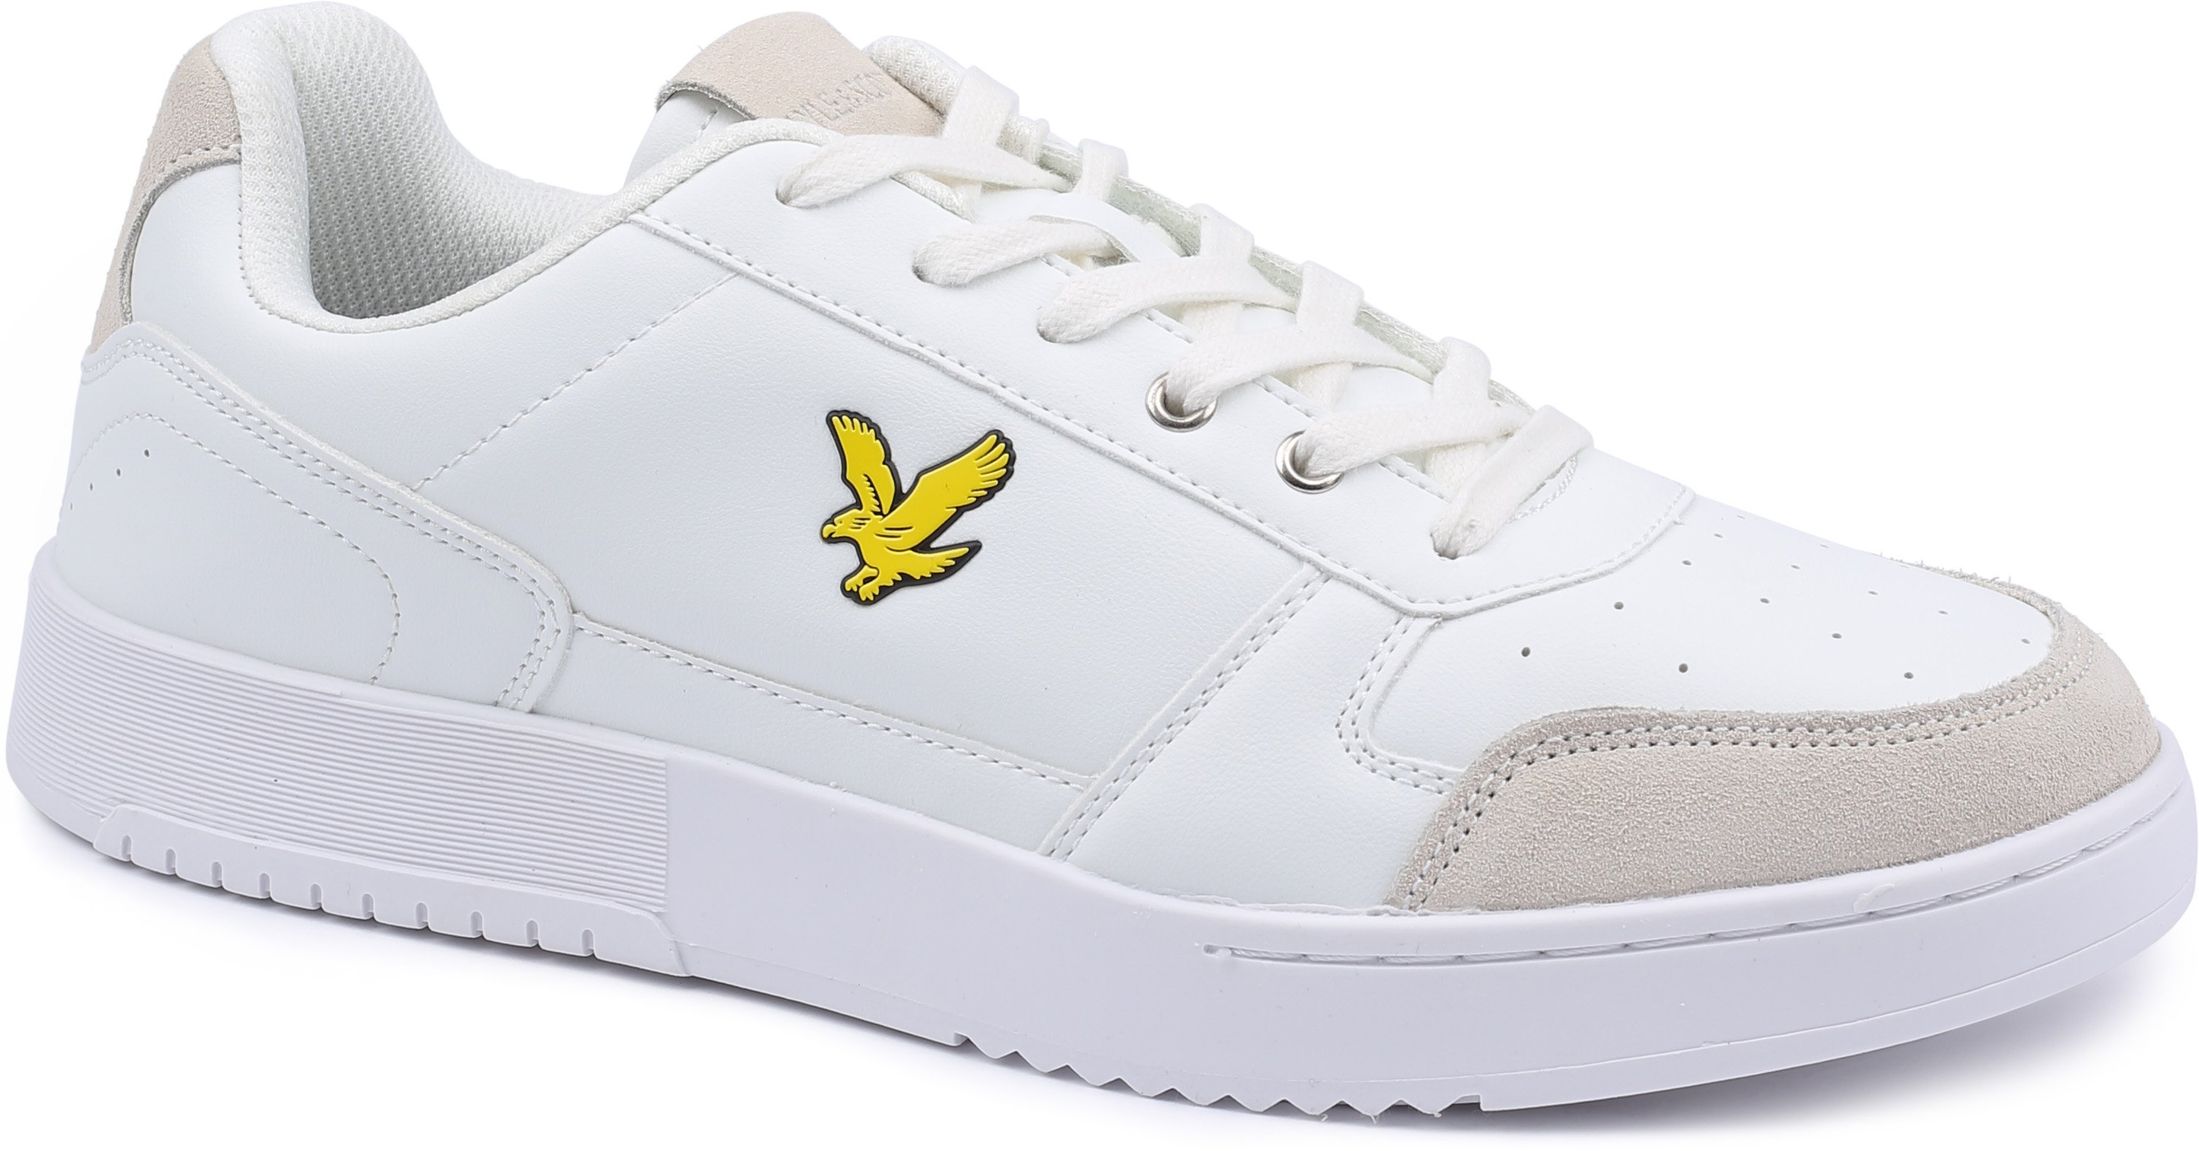 Lyle & Scott Sneaker Shoes Croy White size 11